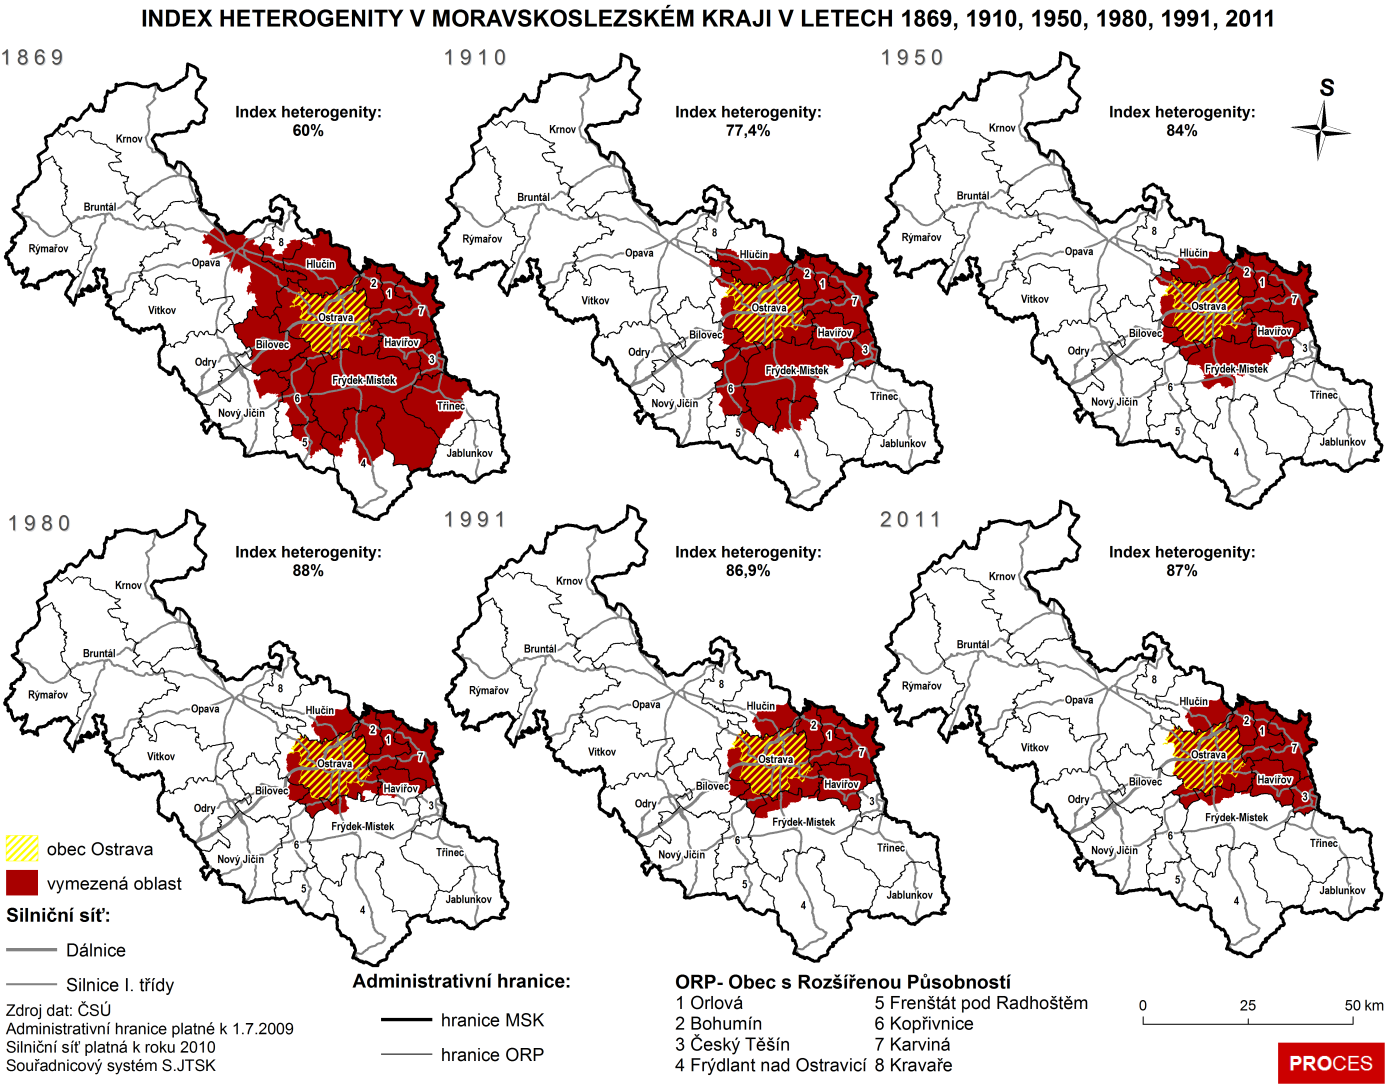 Obrázek 1 Index heterogenity v Moravskoslezském kraji v letech 1989, 1910, 1950, 1980, 1991, 2011.